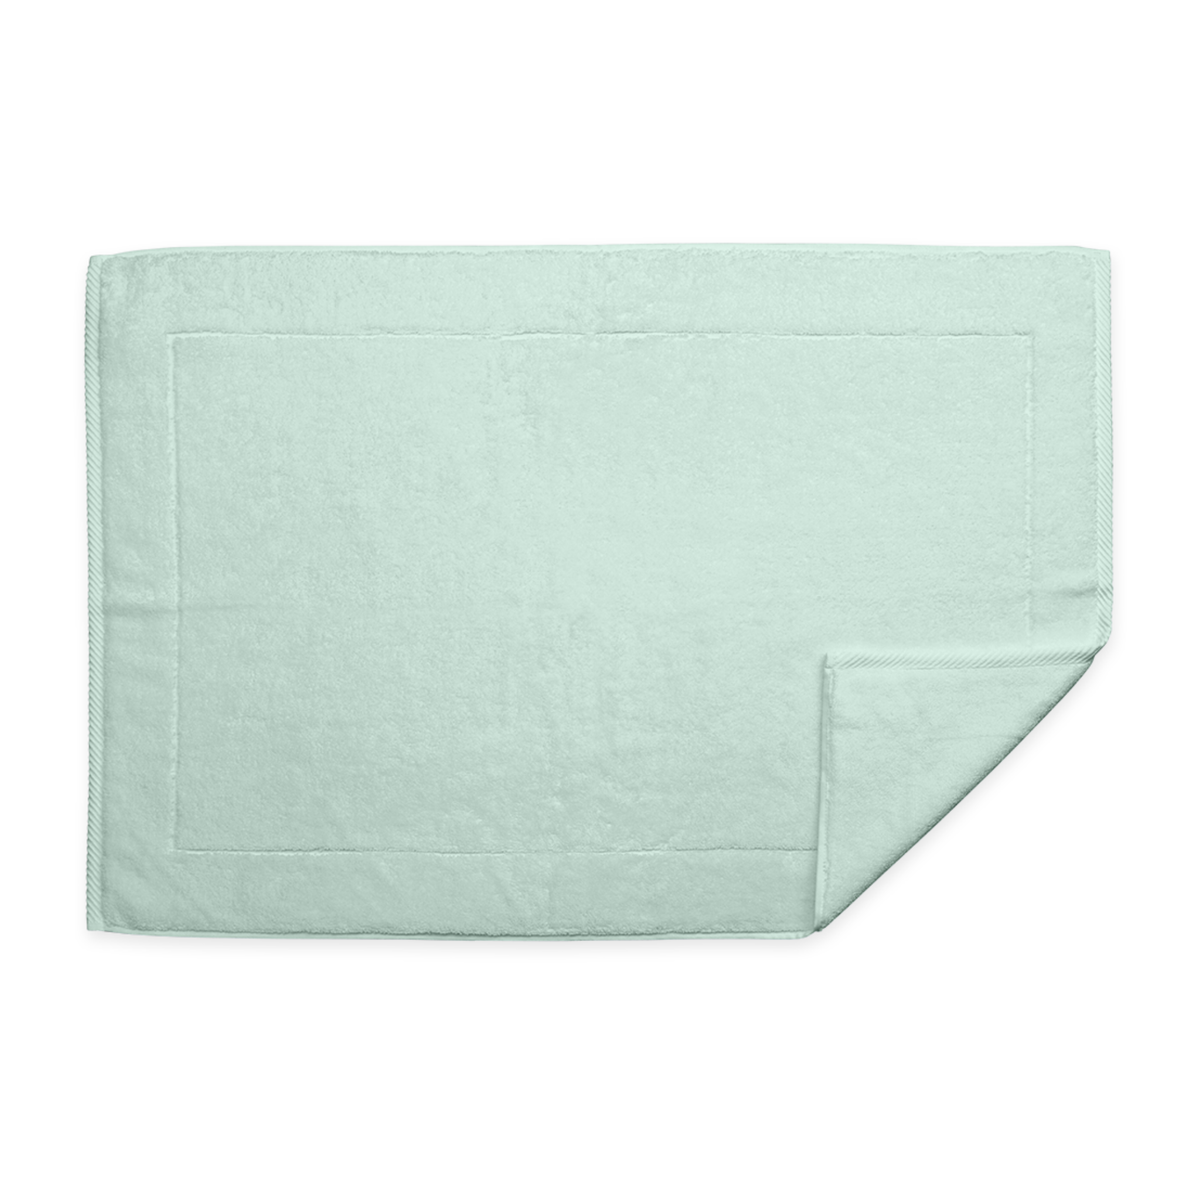 Matouk Milagro Bath Towels and Mats Top Aqua Fine Linens